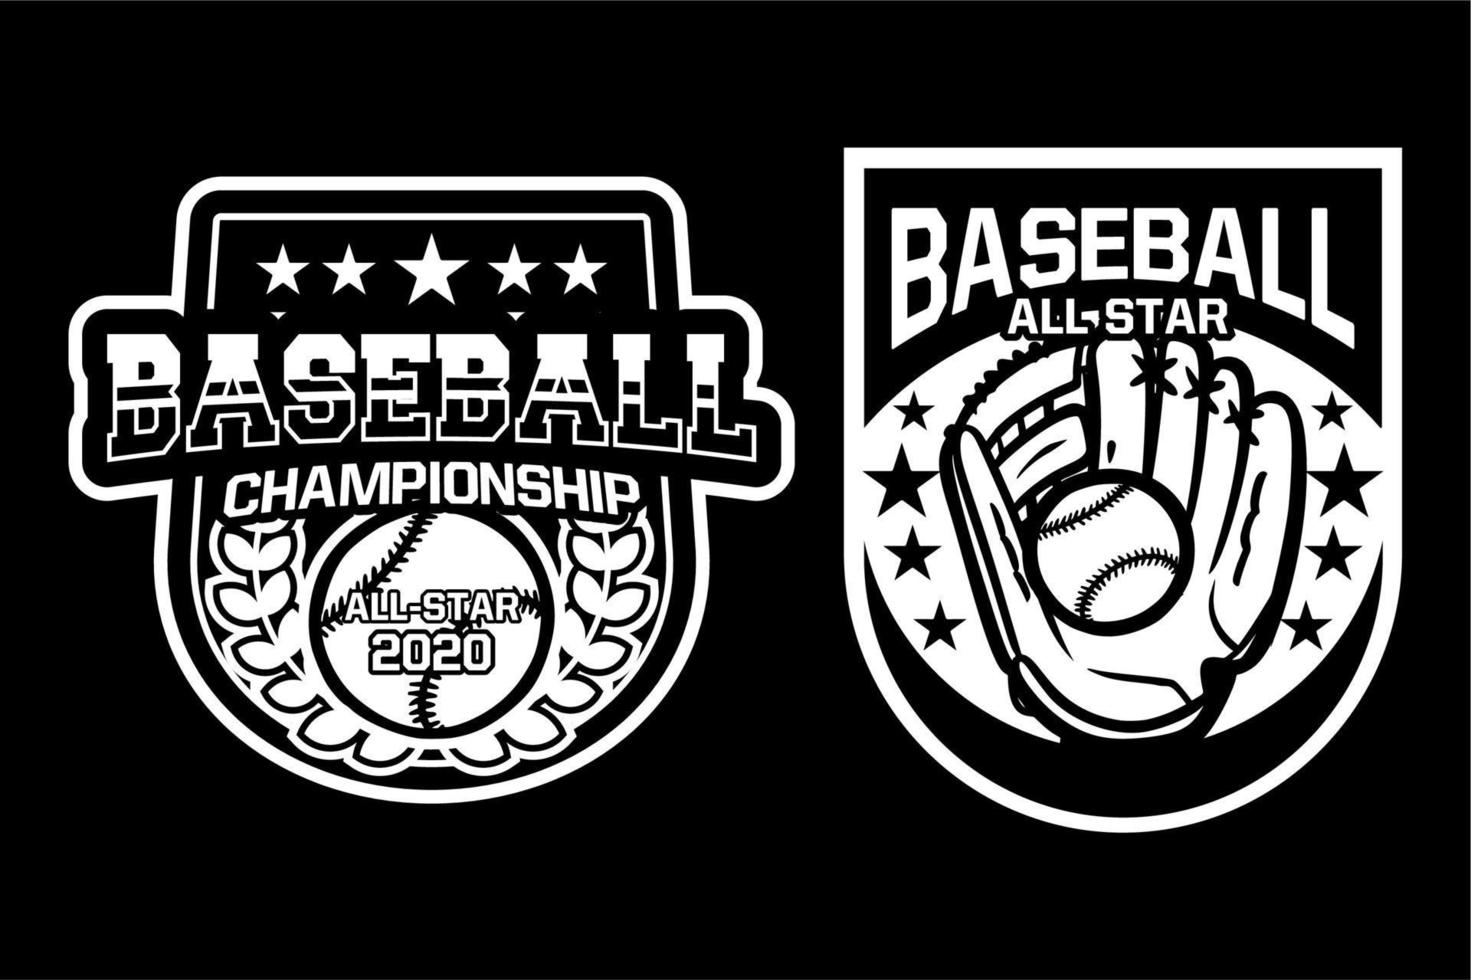 campionato di baseball tutte le stelle distintivo logo emblema modello collezione in bianco e nero vettore